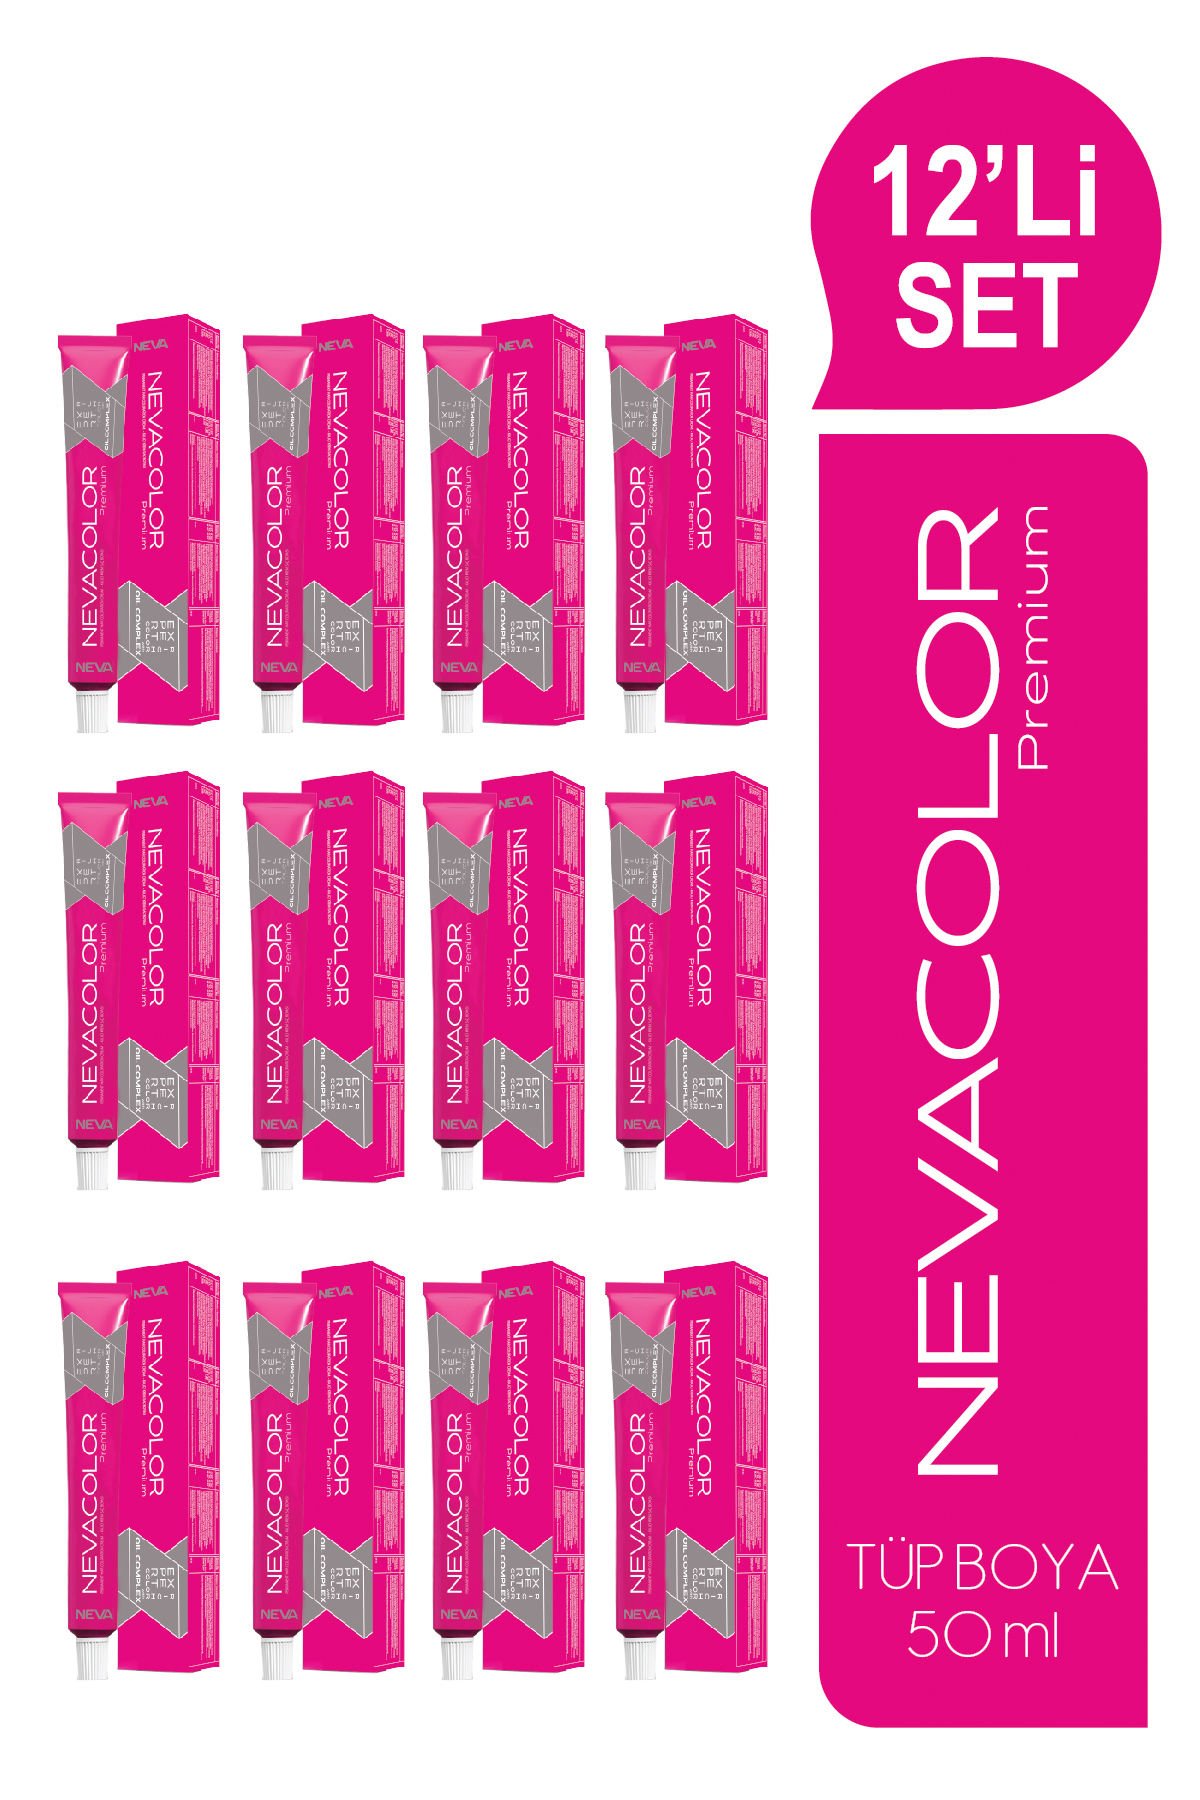 NEVACOLOR Premium 12'Lİ SET  4.4 ORTA KESTANE Kalıcı Krem Saç Boyası (50ml x 12 adet)